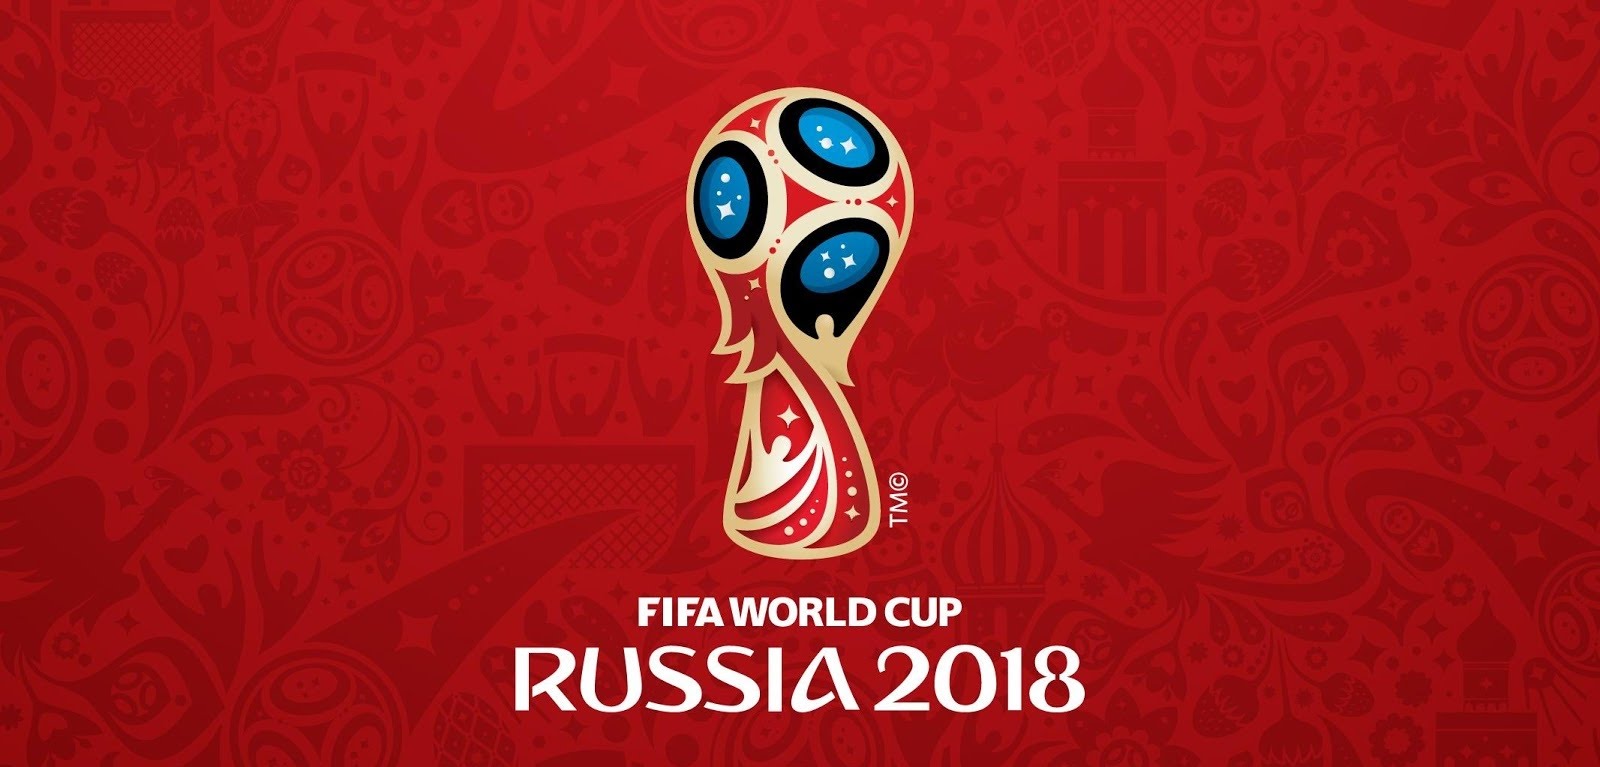 La Fifa avverte: "Mondiali di calcio in Russia? Pericolo per i fan gay" - mondiali calcio 2 - Gay.it